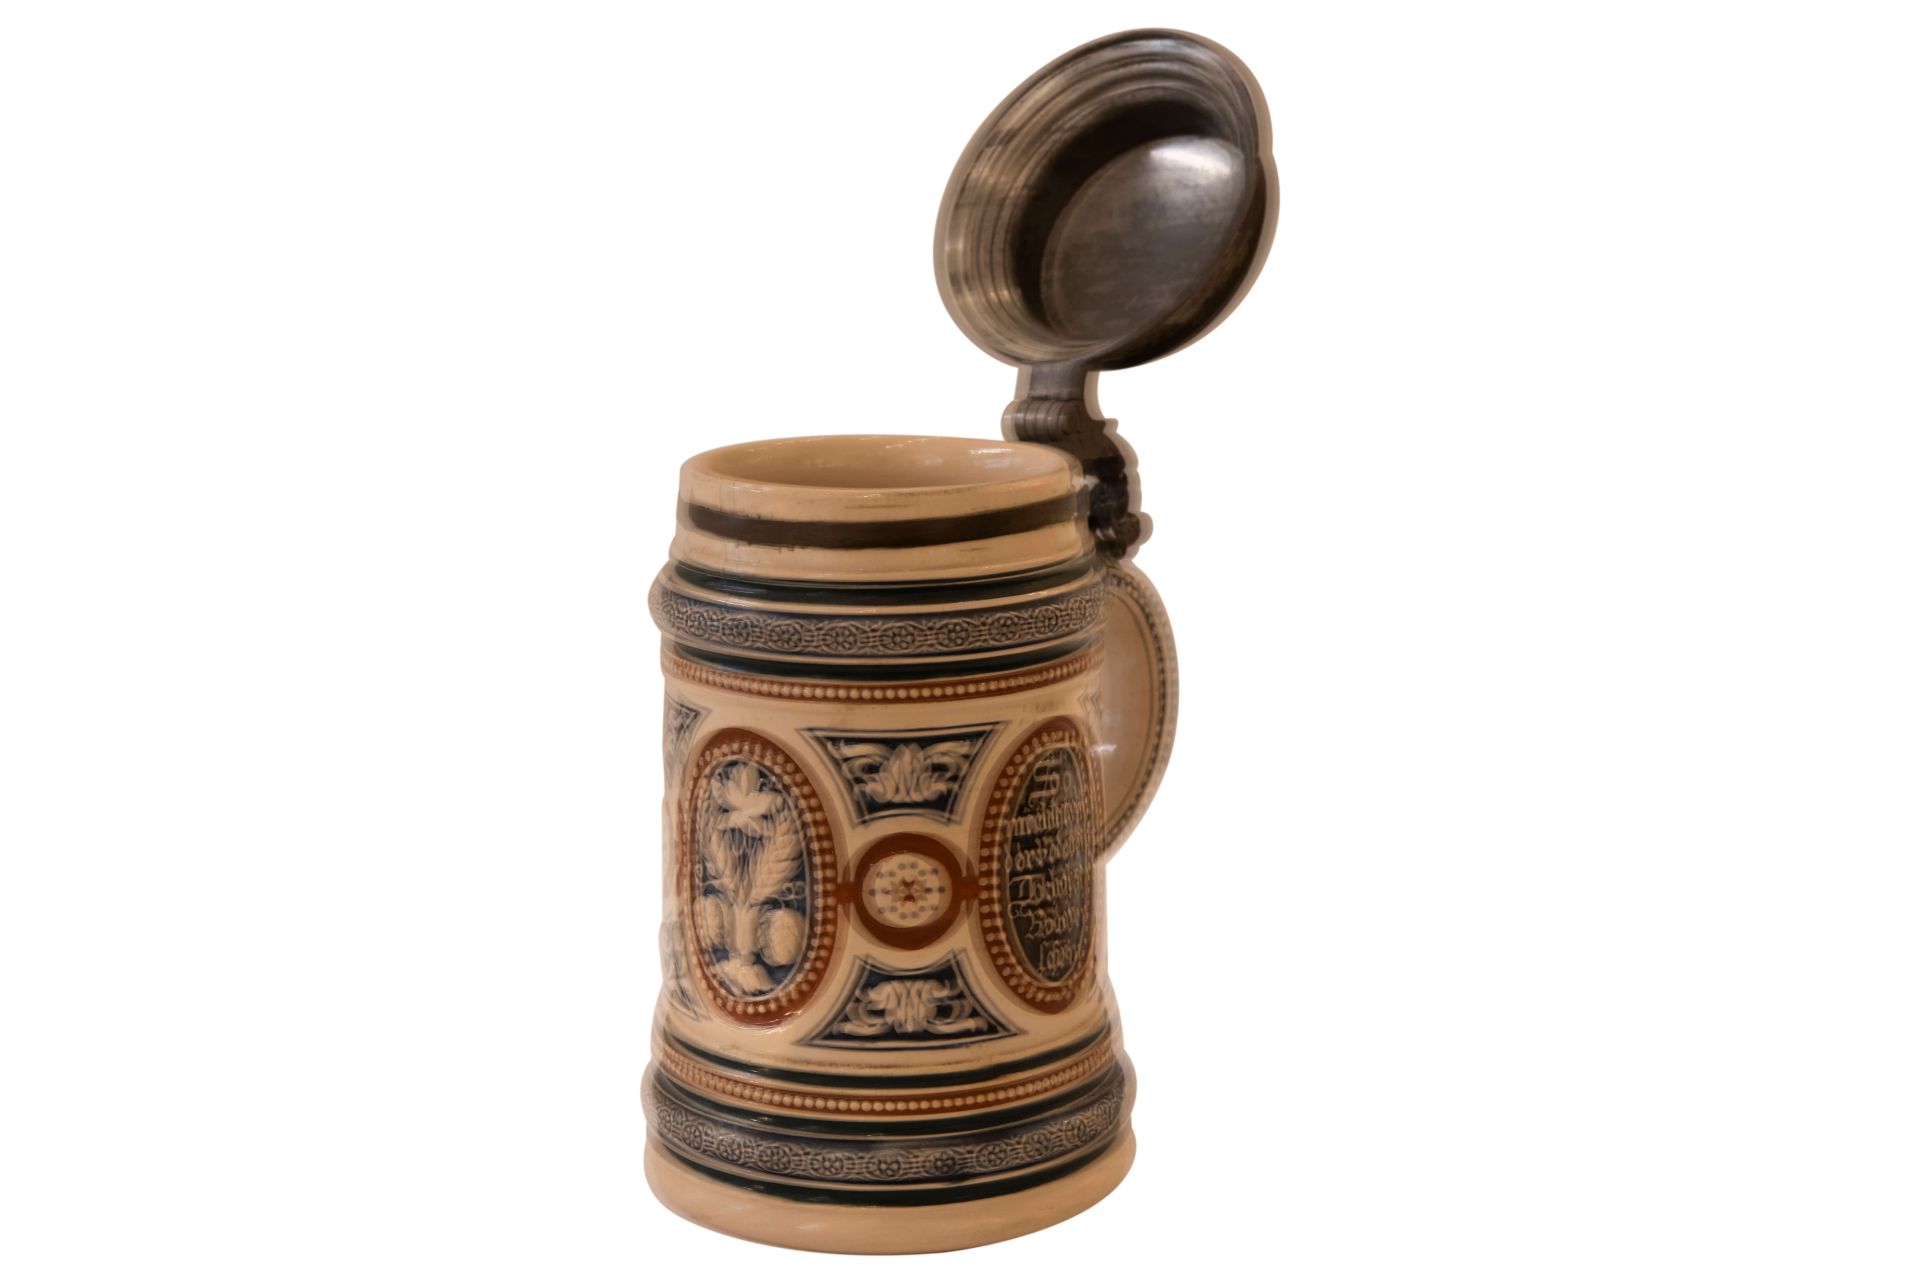 Keramik Bierkrug mit Deckel | Ceramic Beer Mug with Lid - Image 4 of 5